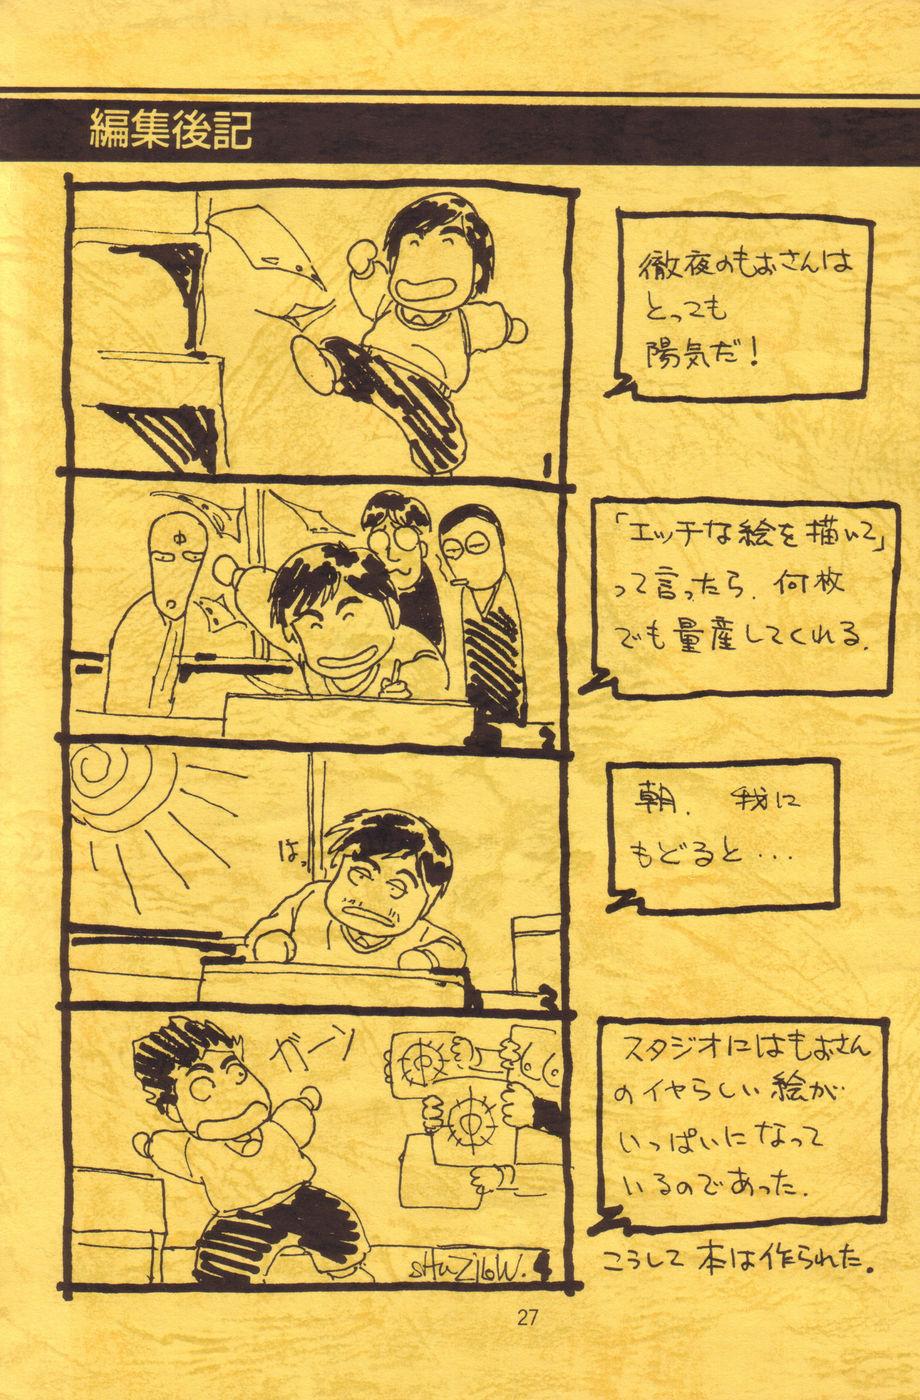 8teenxxx Mori kazuaki kojin-shou 2. 5 De - Dream hunter rem Livesex - Page 28